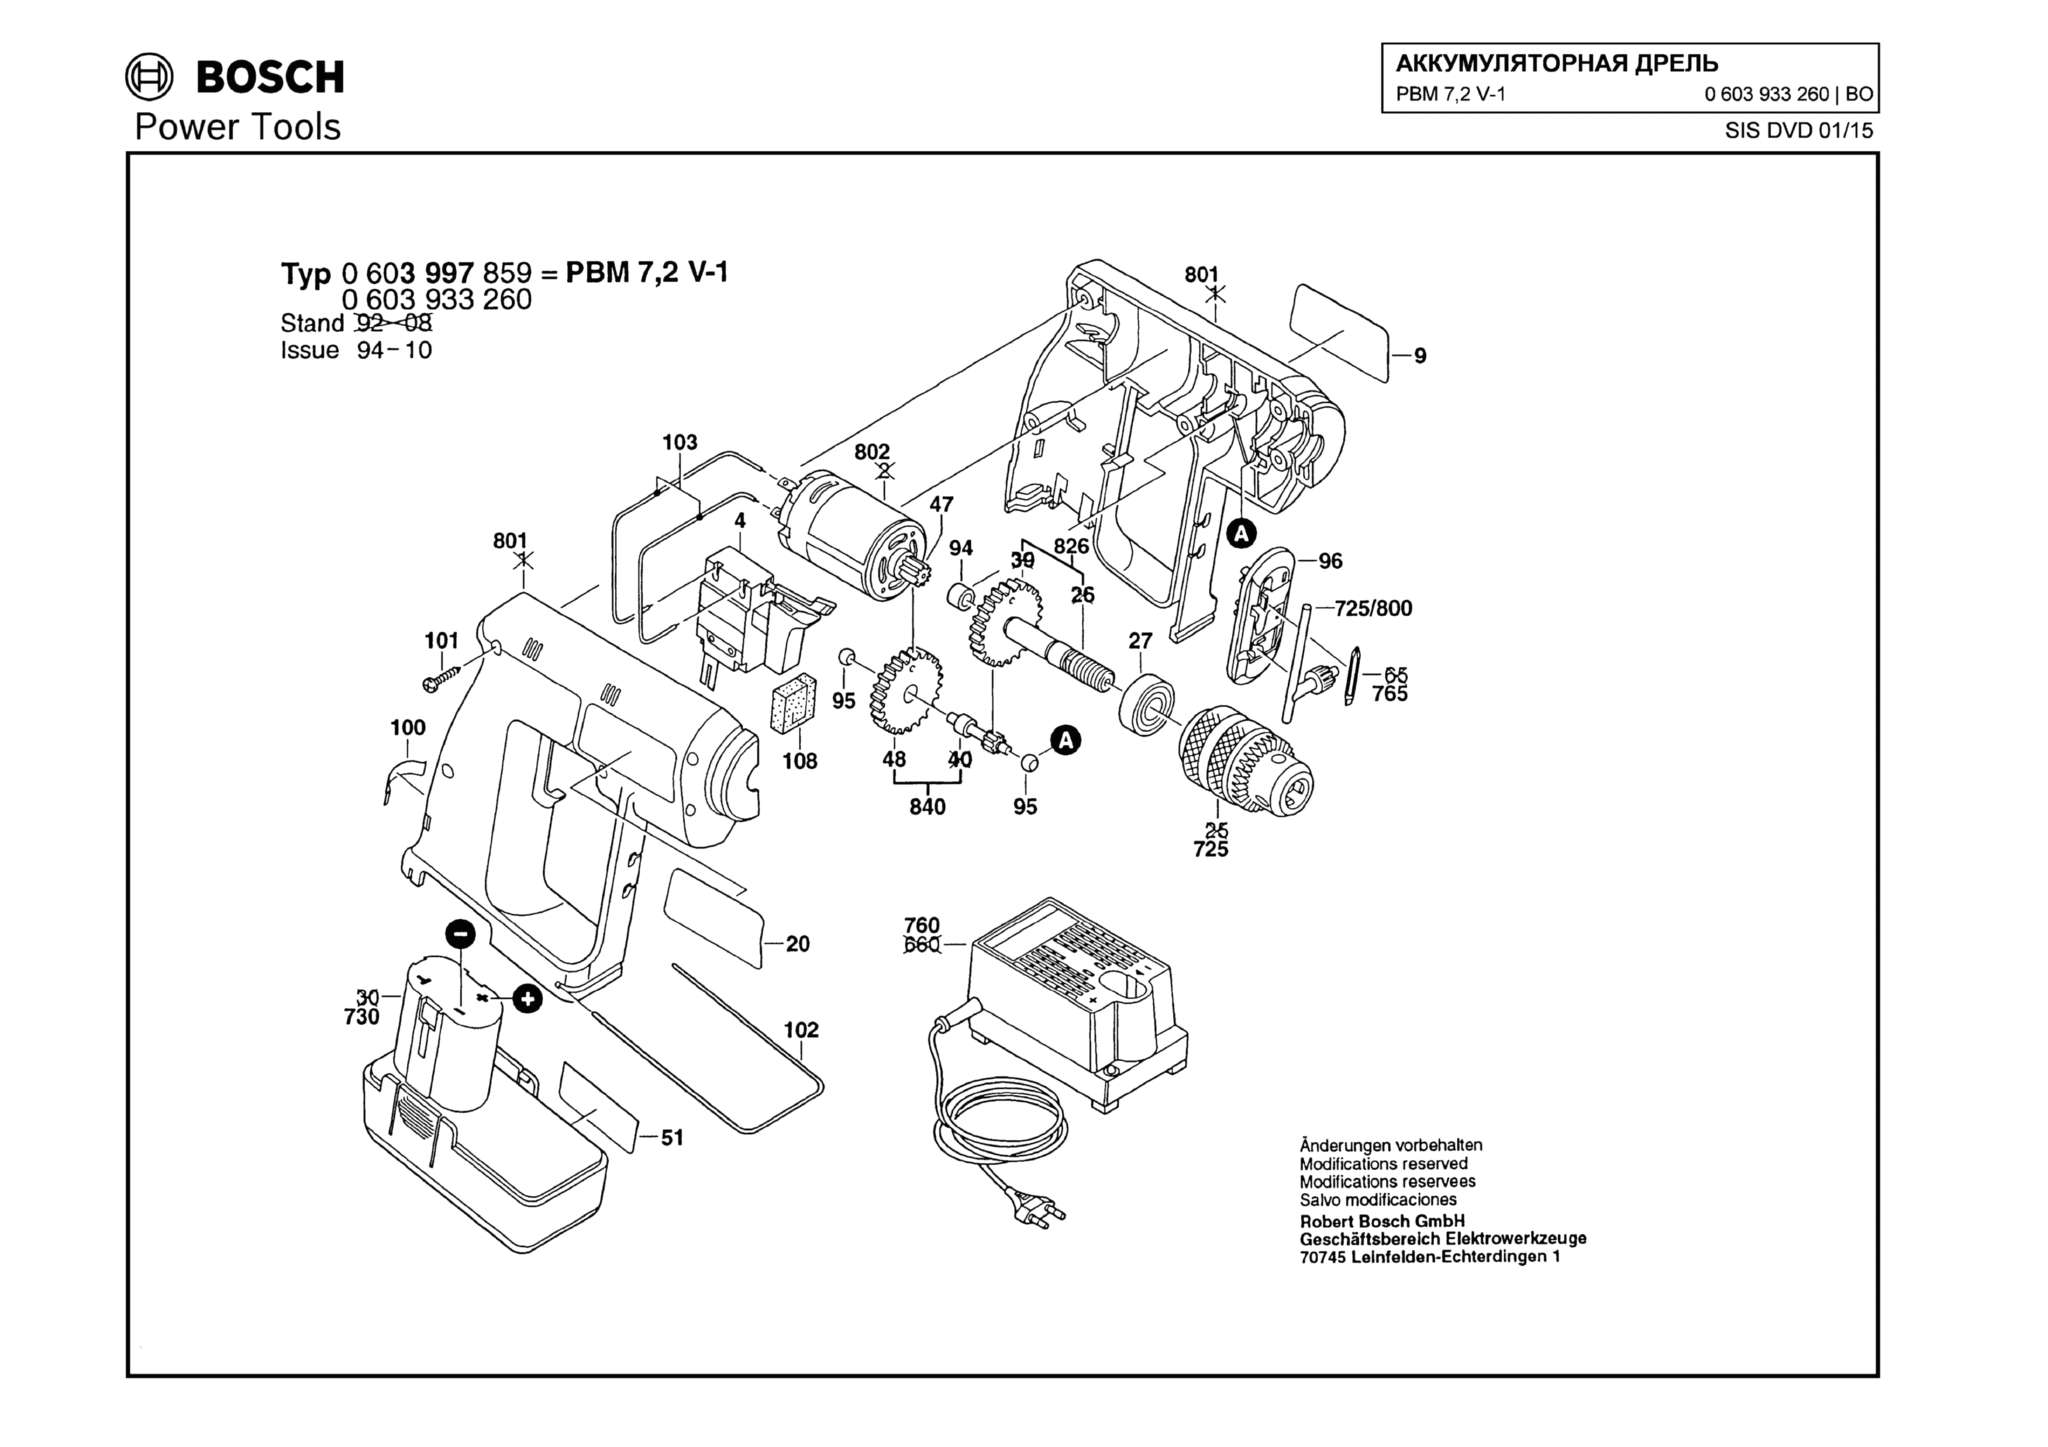 Запчасти, схема и деталировка Bosch PBM 7,2 V-1 (ТИП 0603933260)